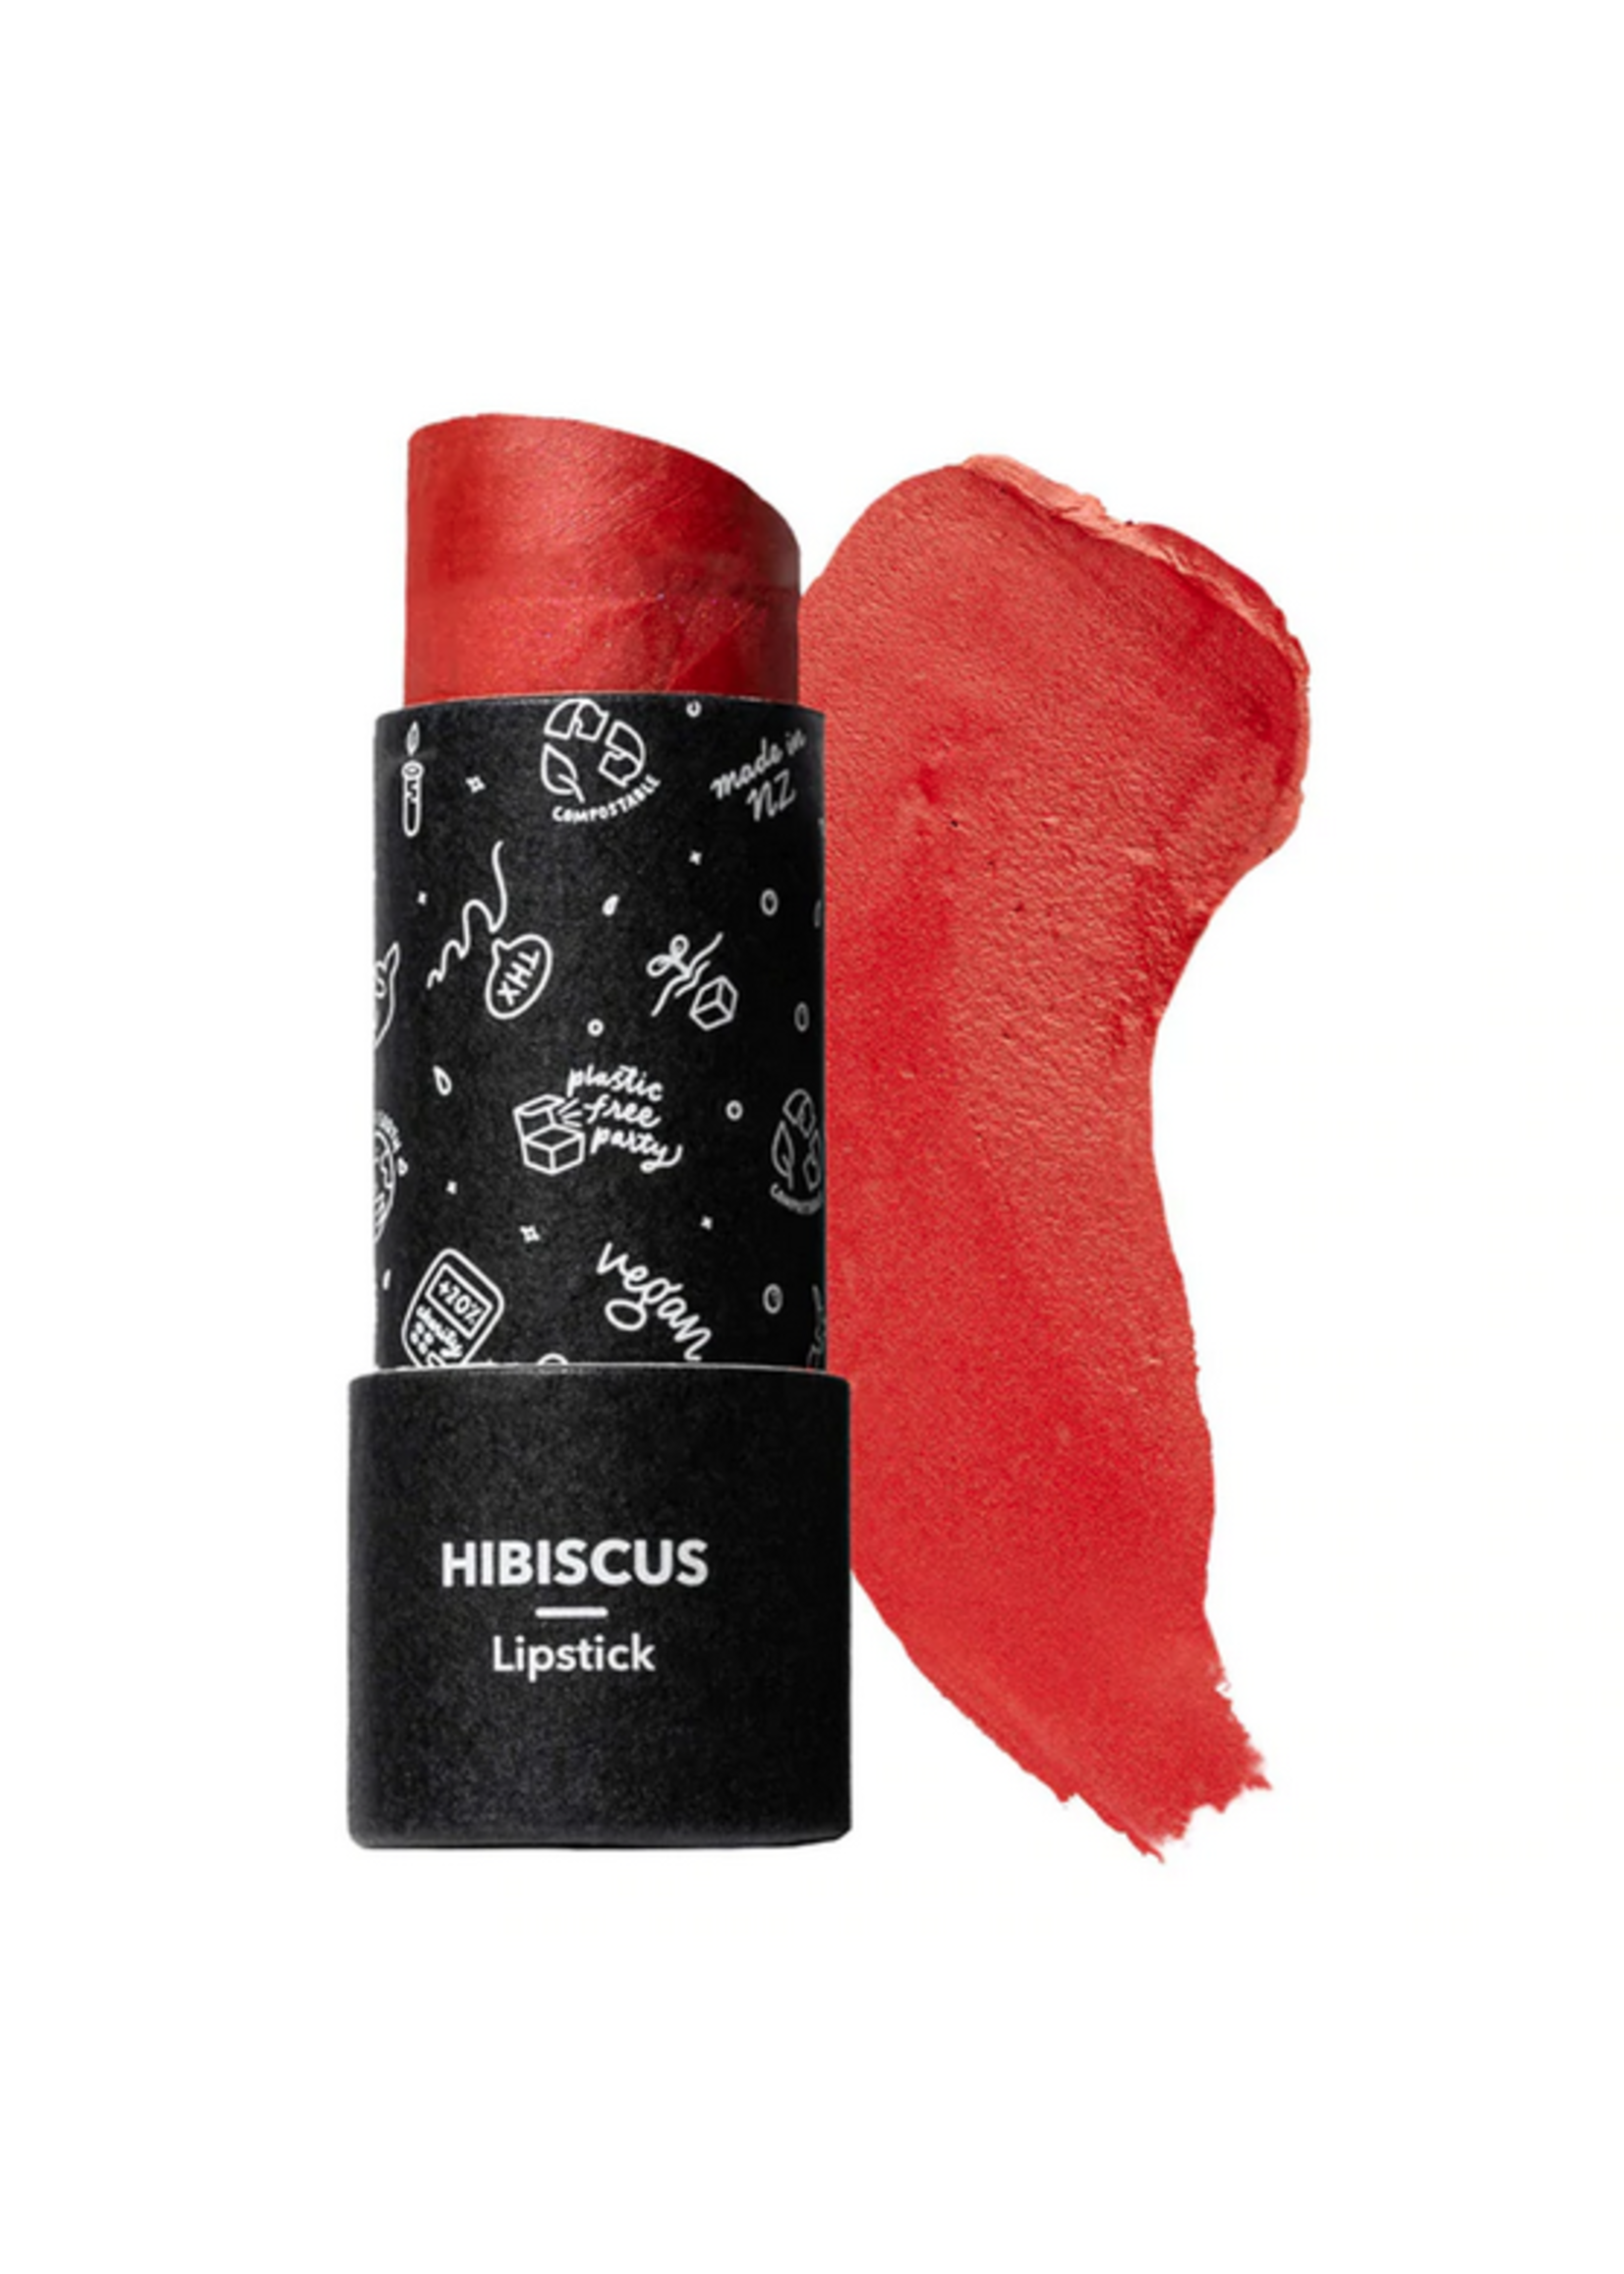 Ethique Ethique Lipstick Hibiscus Vibrant Coral 8g